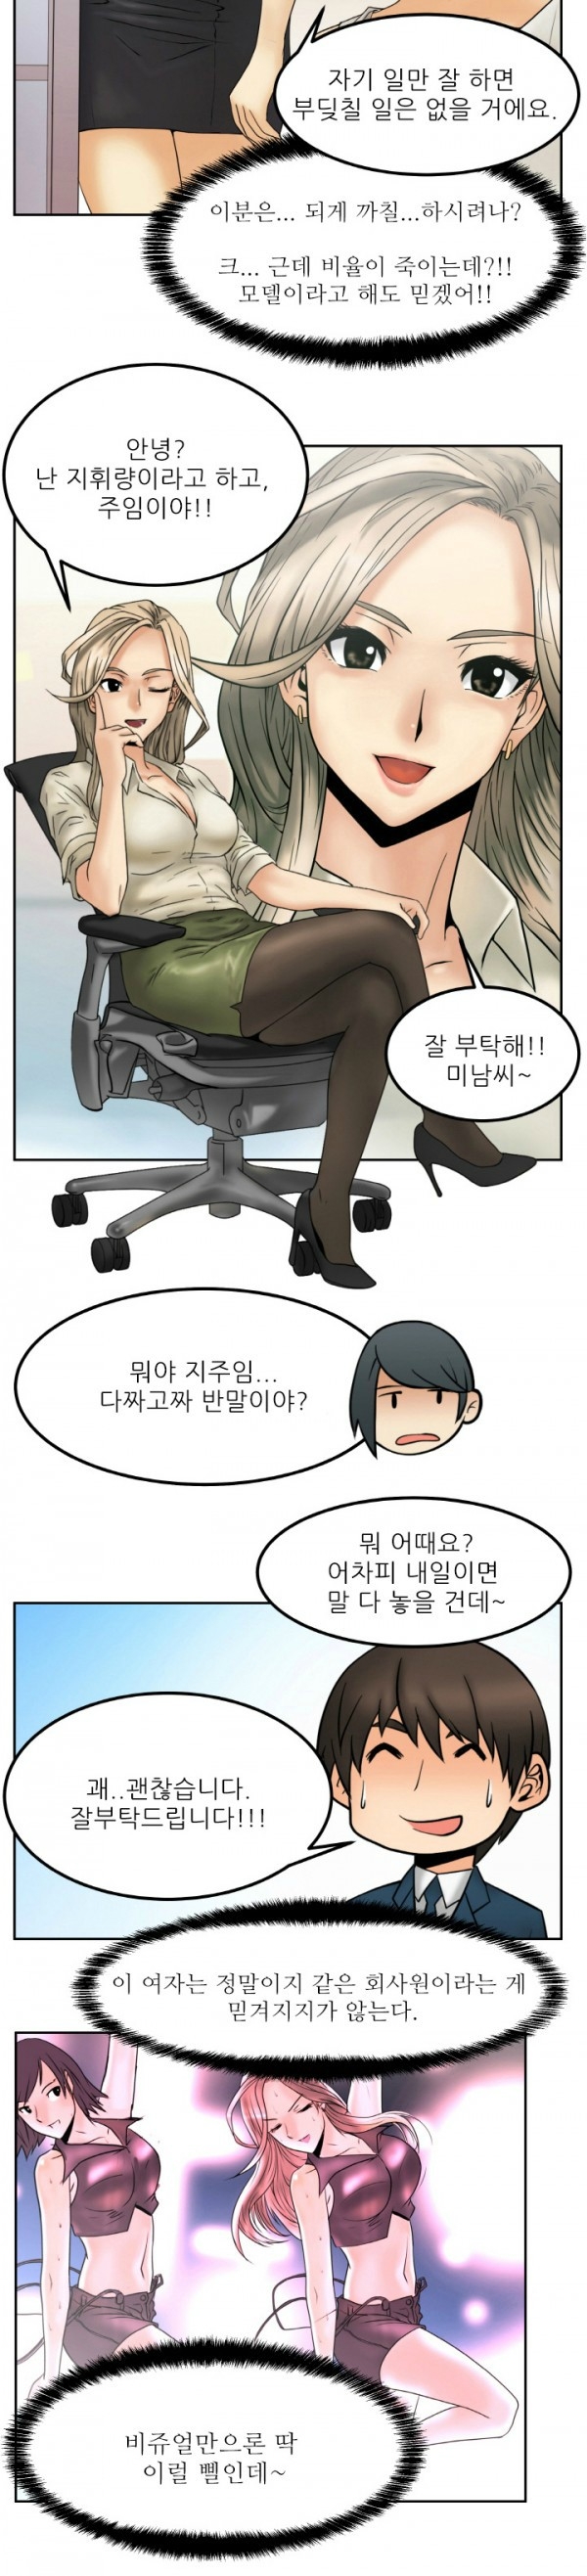 [Minu Mindu] Office Lady Vol. 1 [Korean] 21